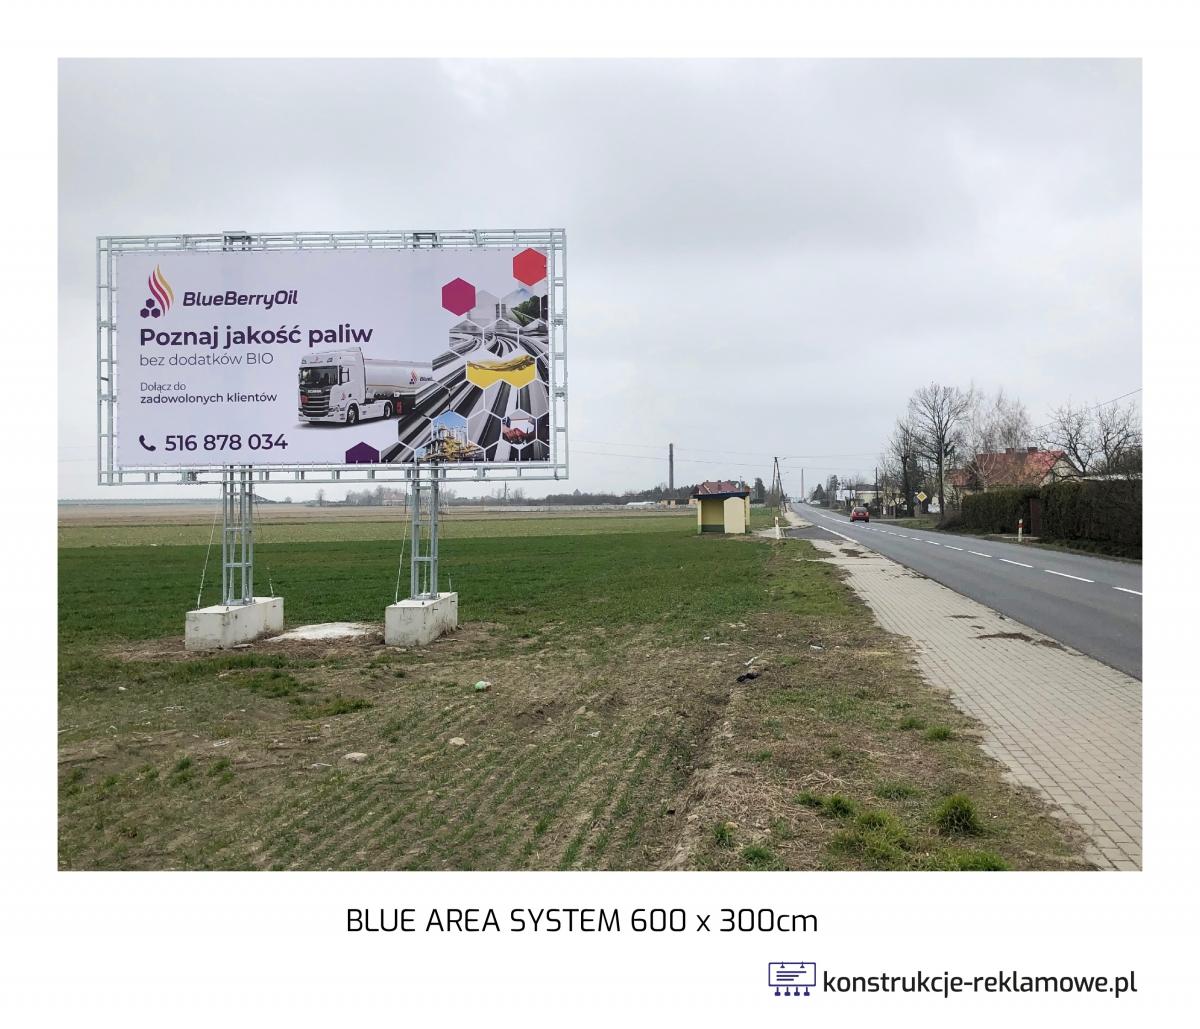 Blue Area System bilboard 600 x 300cm - konstrukcje-reklamowe.pl